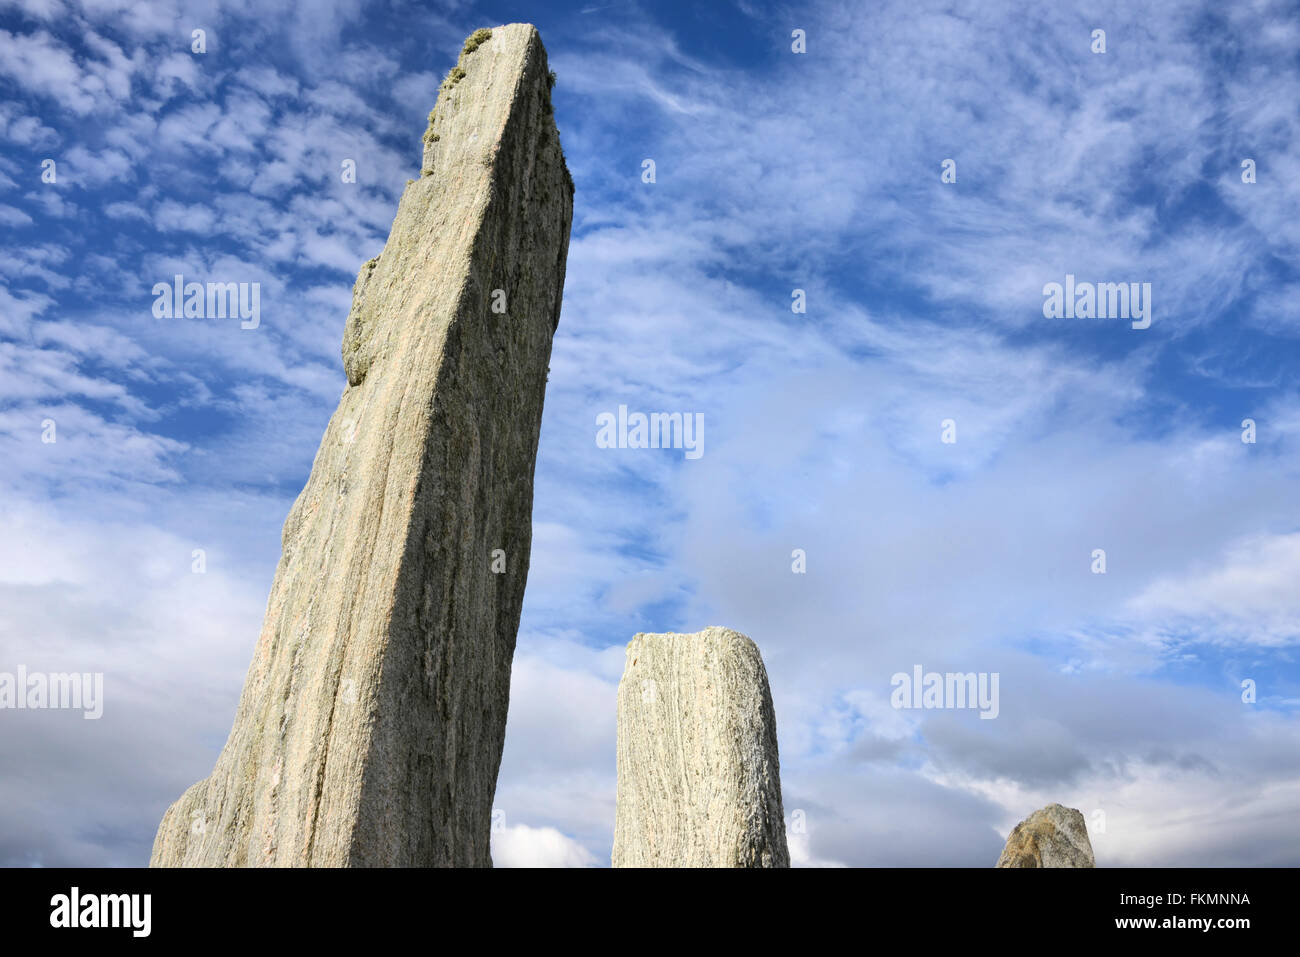 Detalle del monolito en el Callanish Stone Circle permanente con un interesante el cielo, la isla de Lewis, Escocia Foto de stock